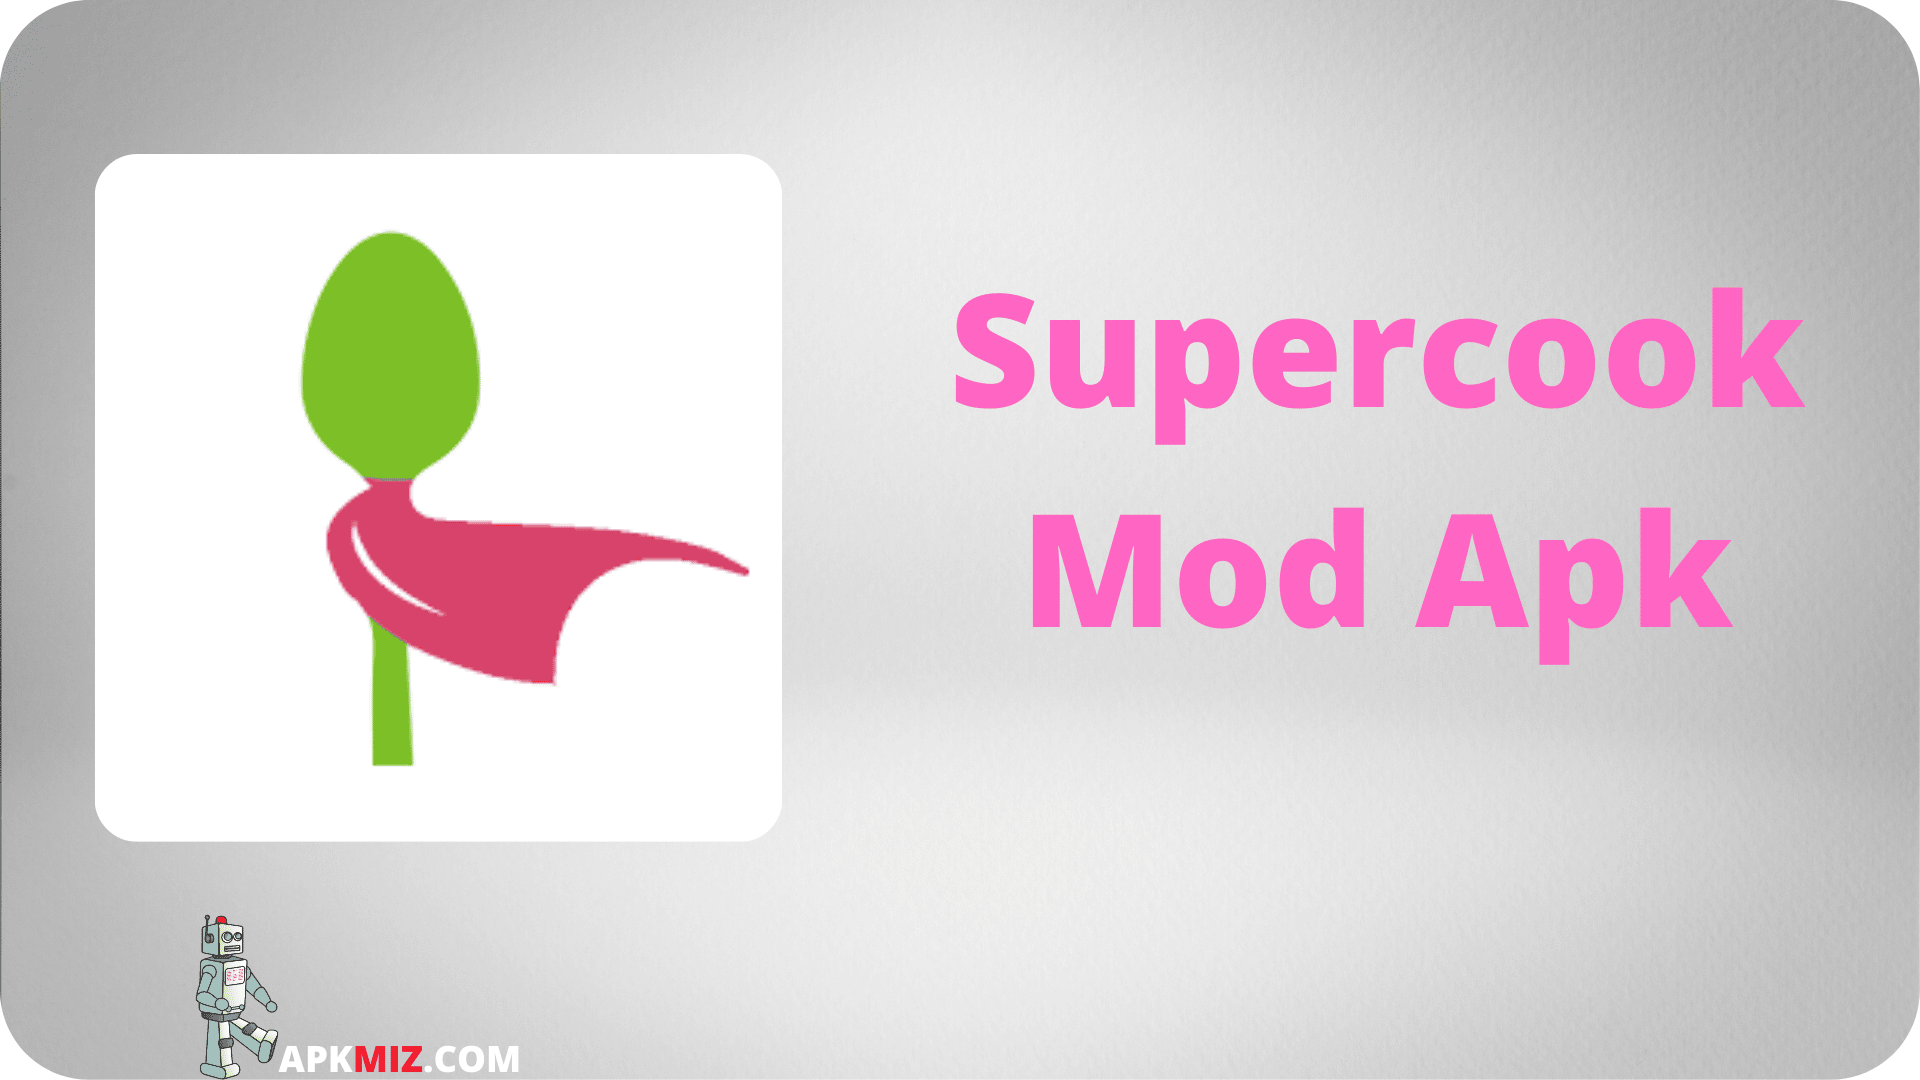 Supercook Mod Apk